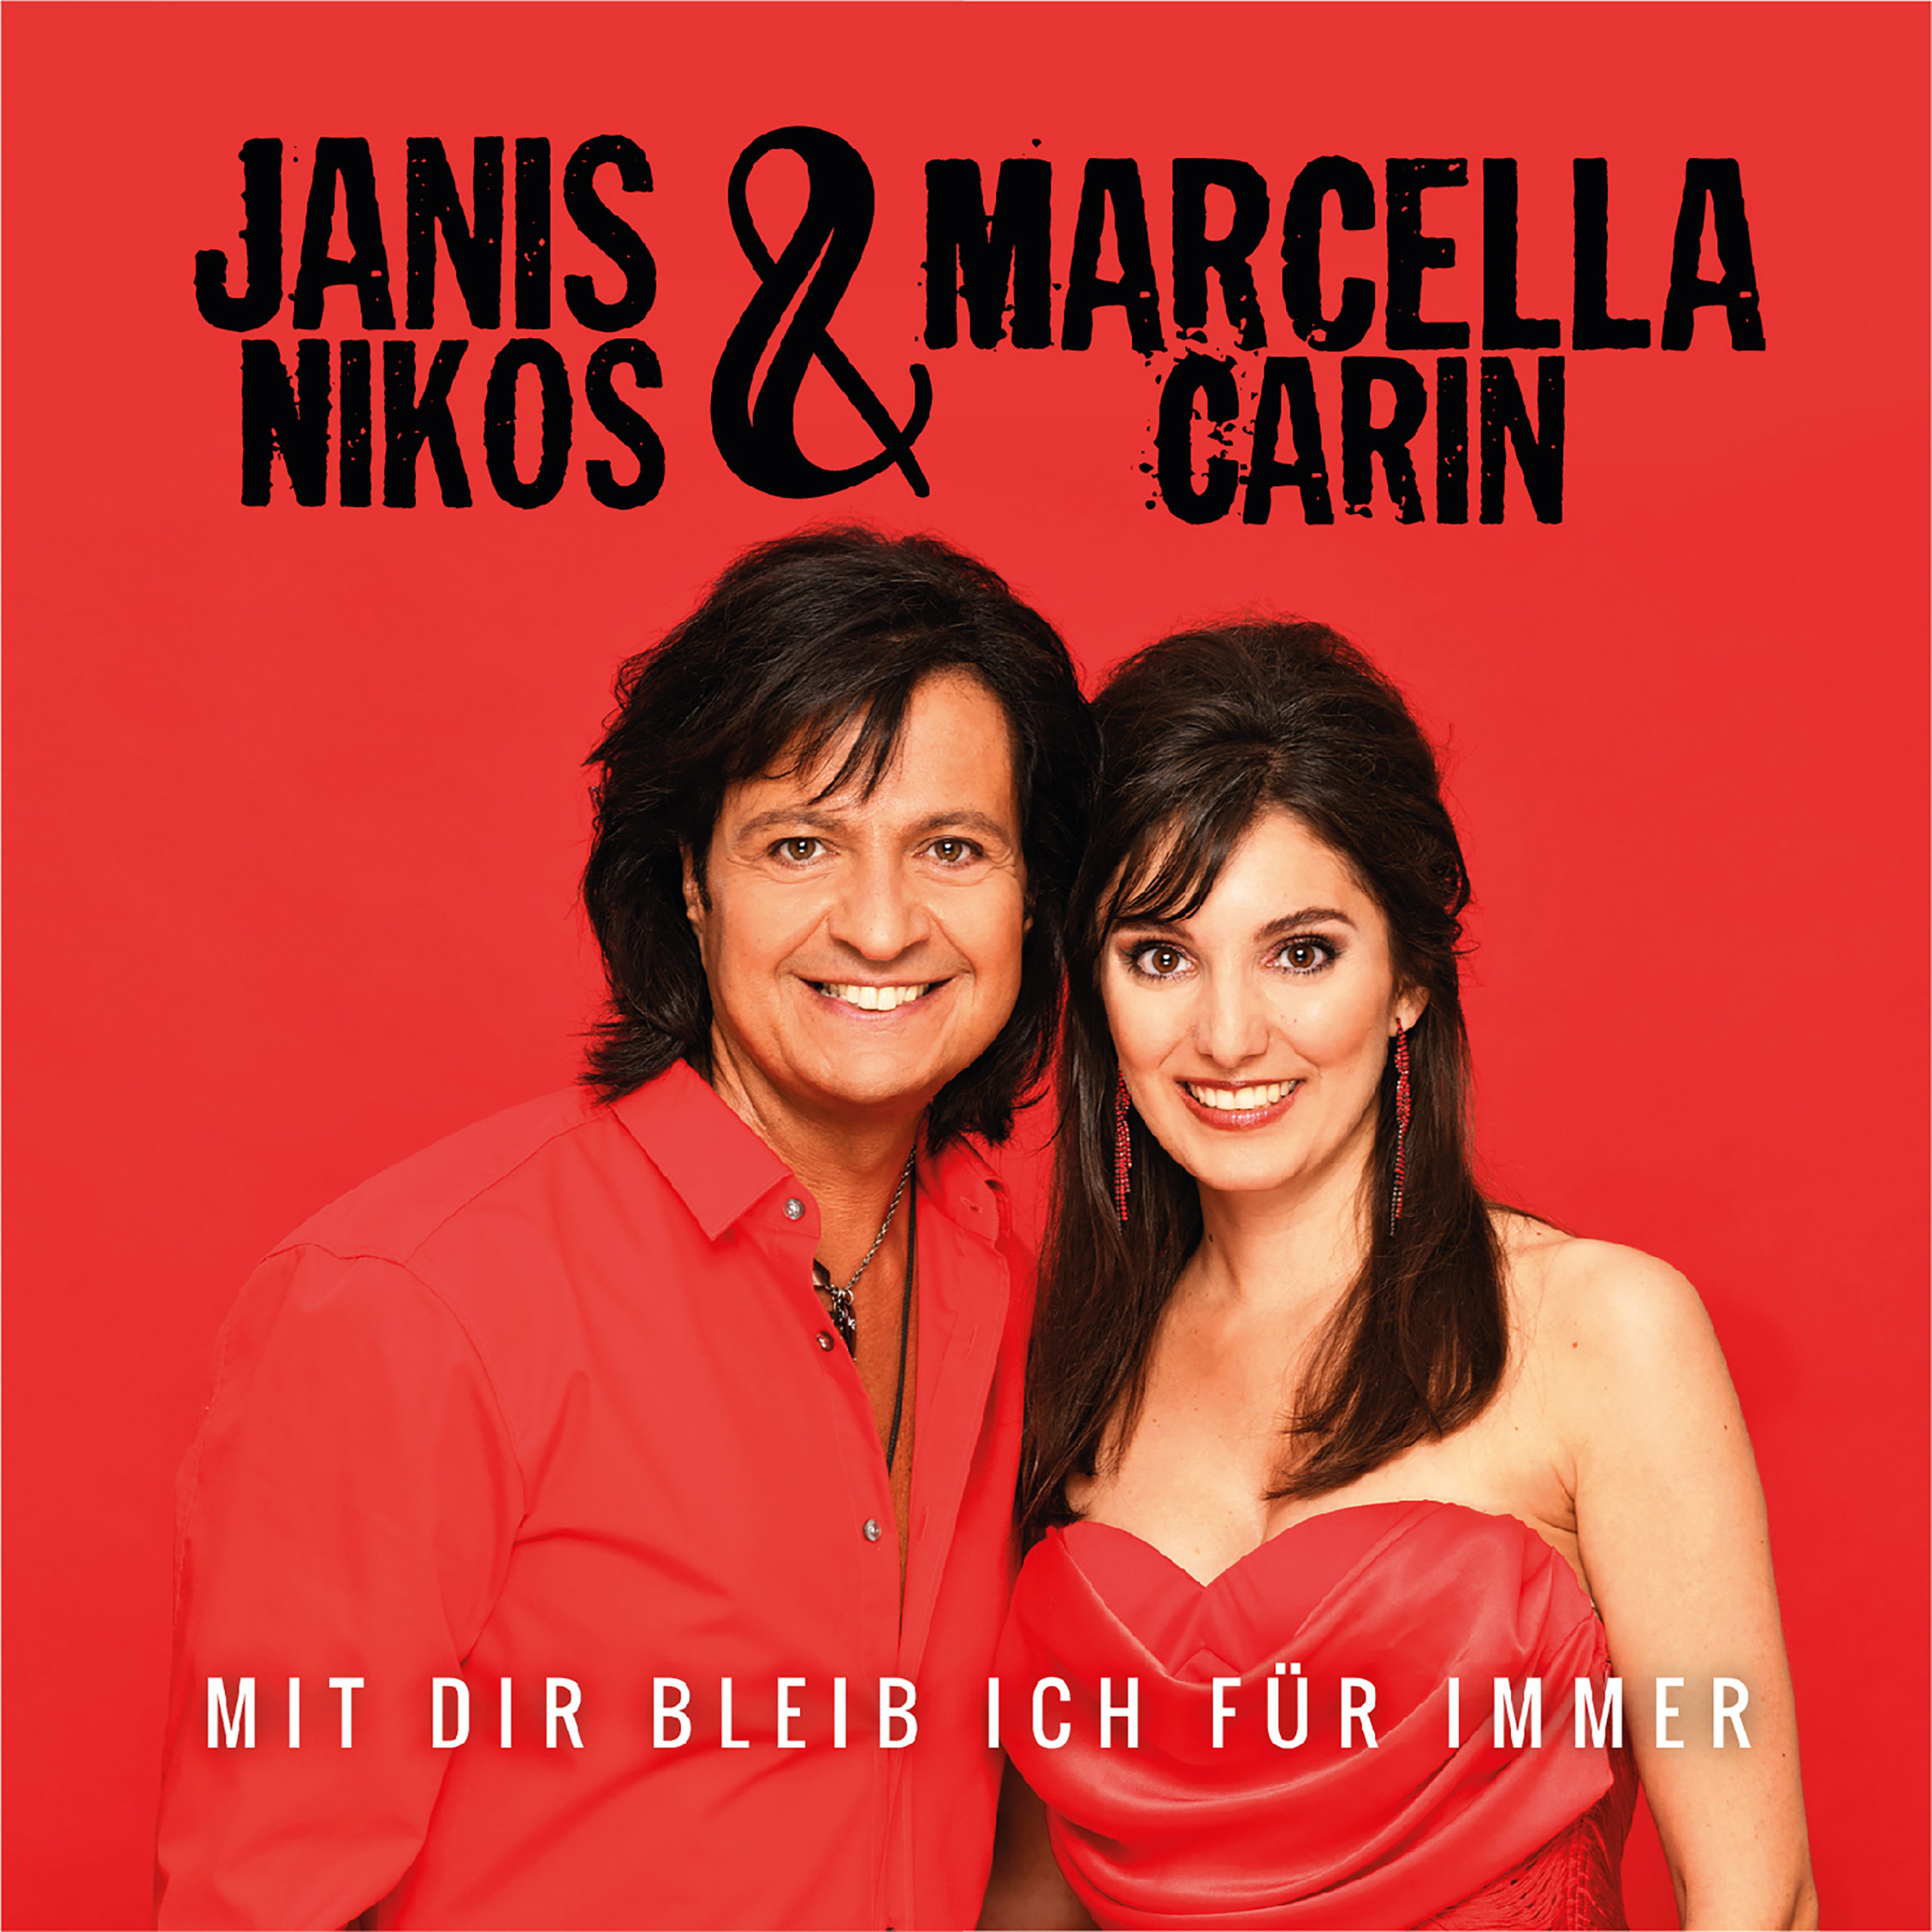 JANIS NIKOS & MARCELLA CARIN * Mit dir bleib ich für immer ((We\'re Gonna Stay Together))  (Download-Track)